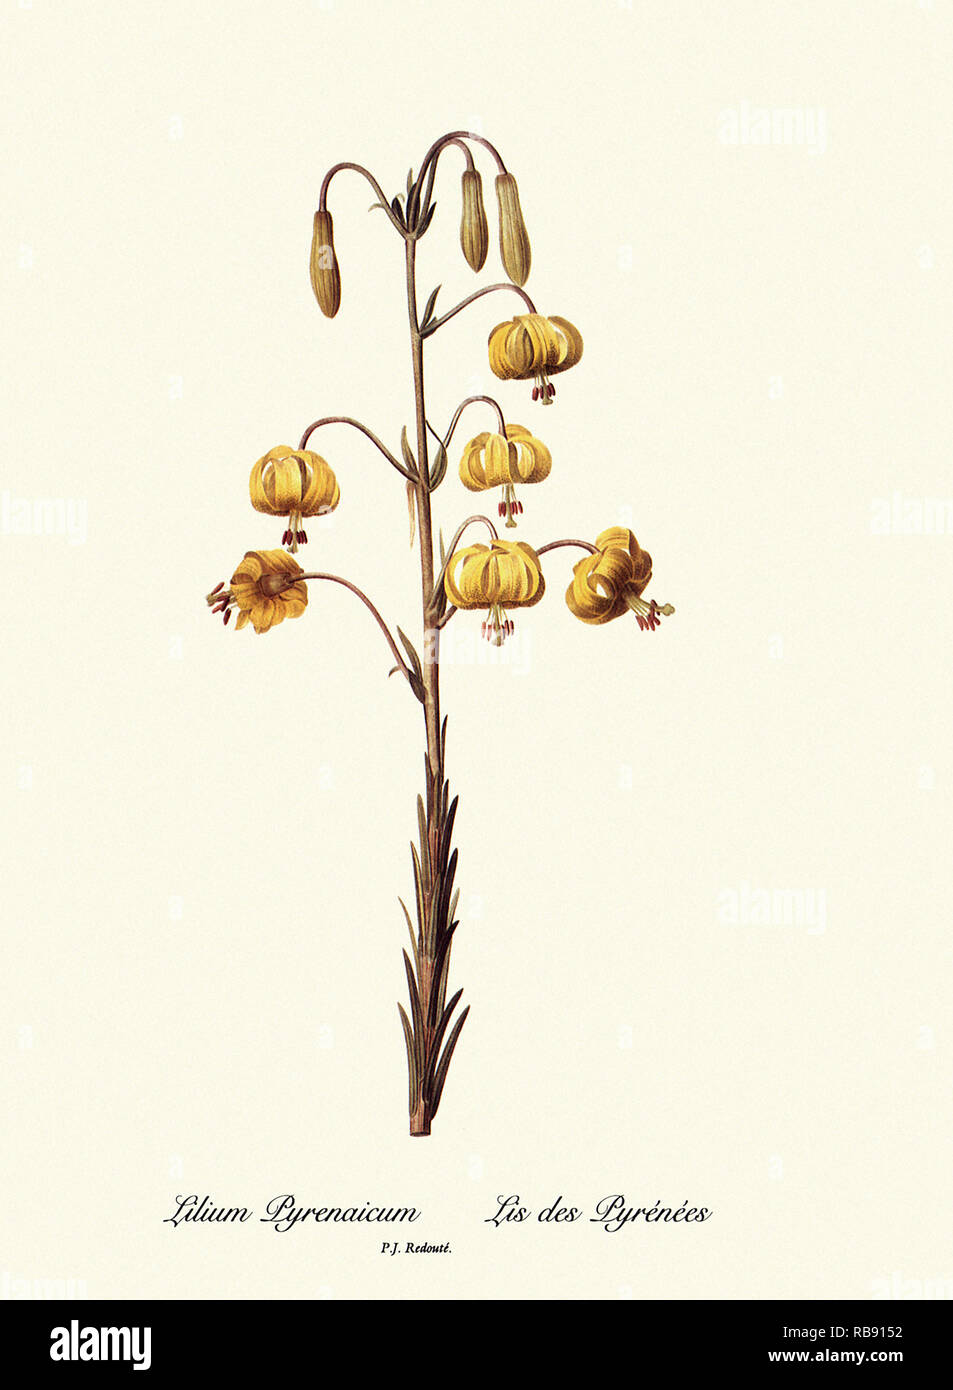 Il Lilium Pyrenaicum, Lis des Pyrénées Foto Stock